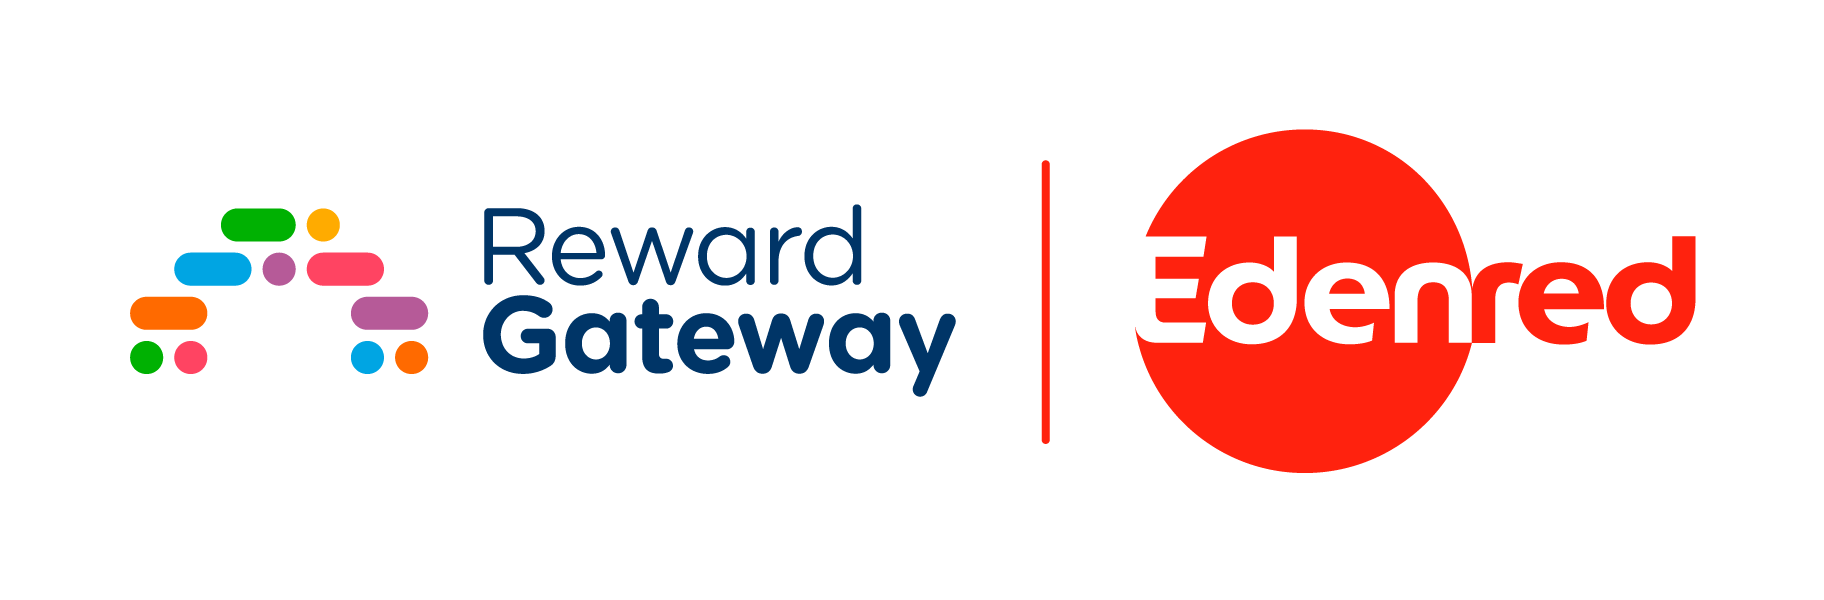 Reward Gateway and Edenred Logo